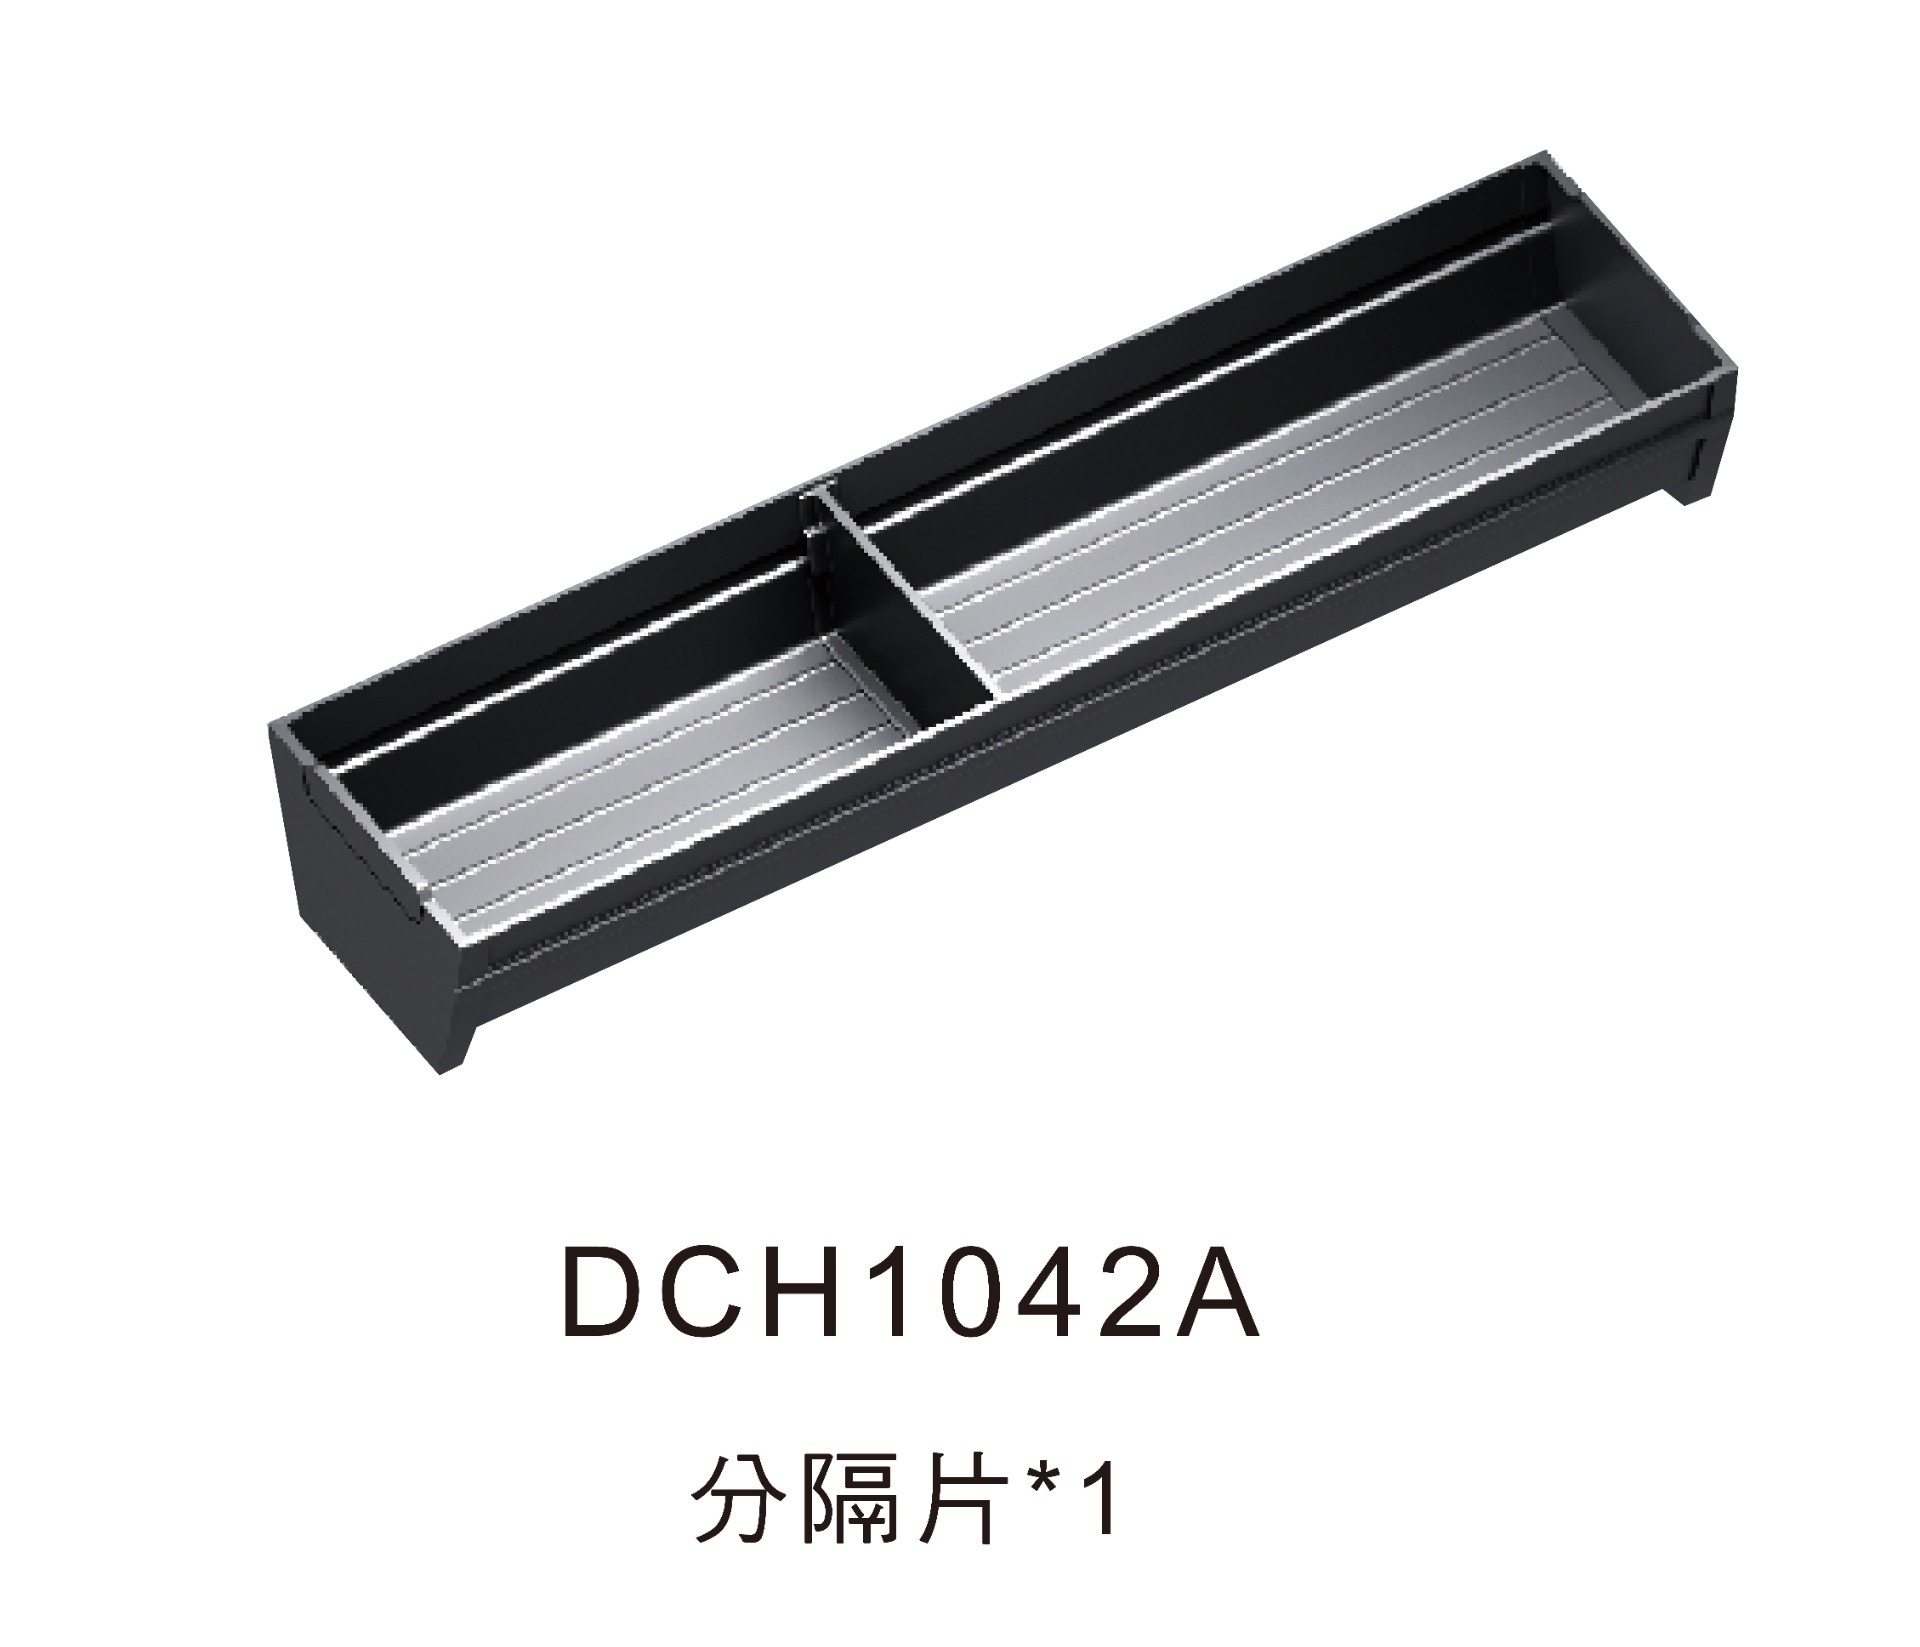 鋁刀叉盒DCH1042A